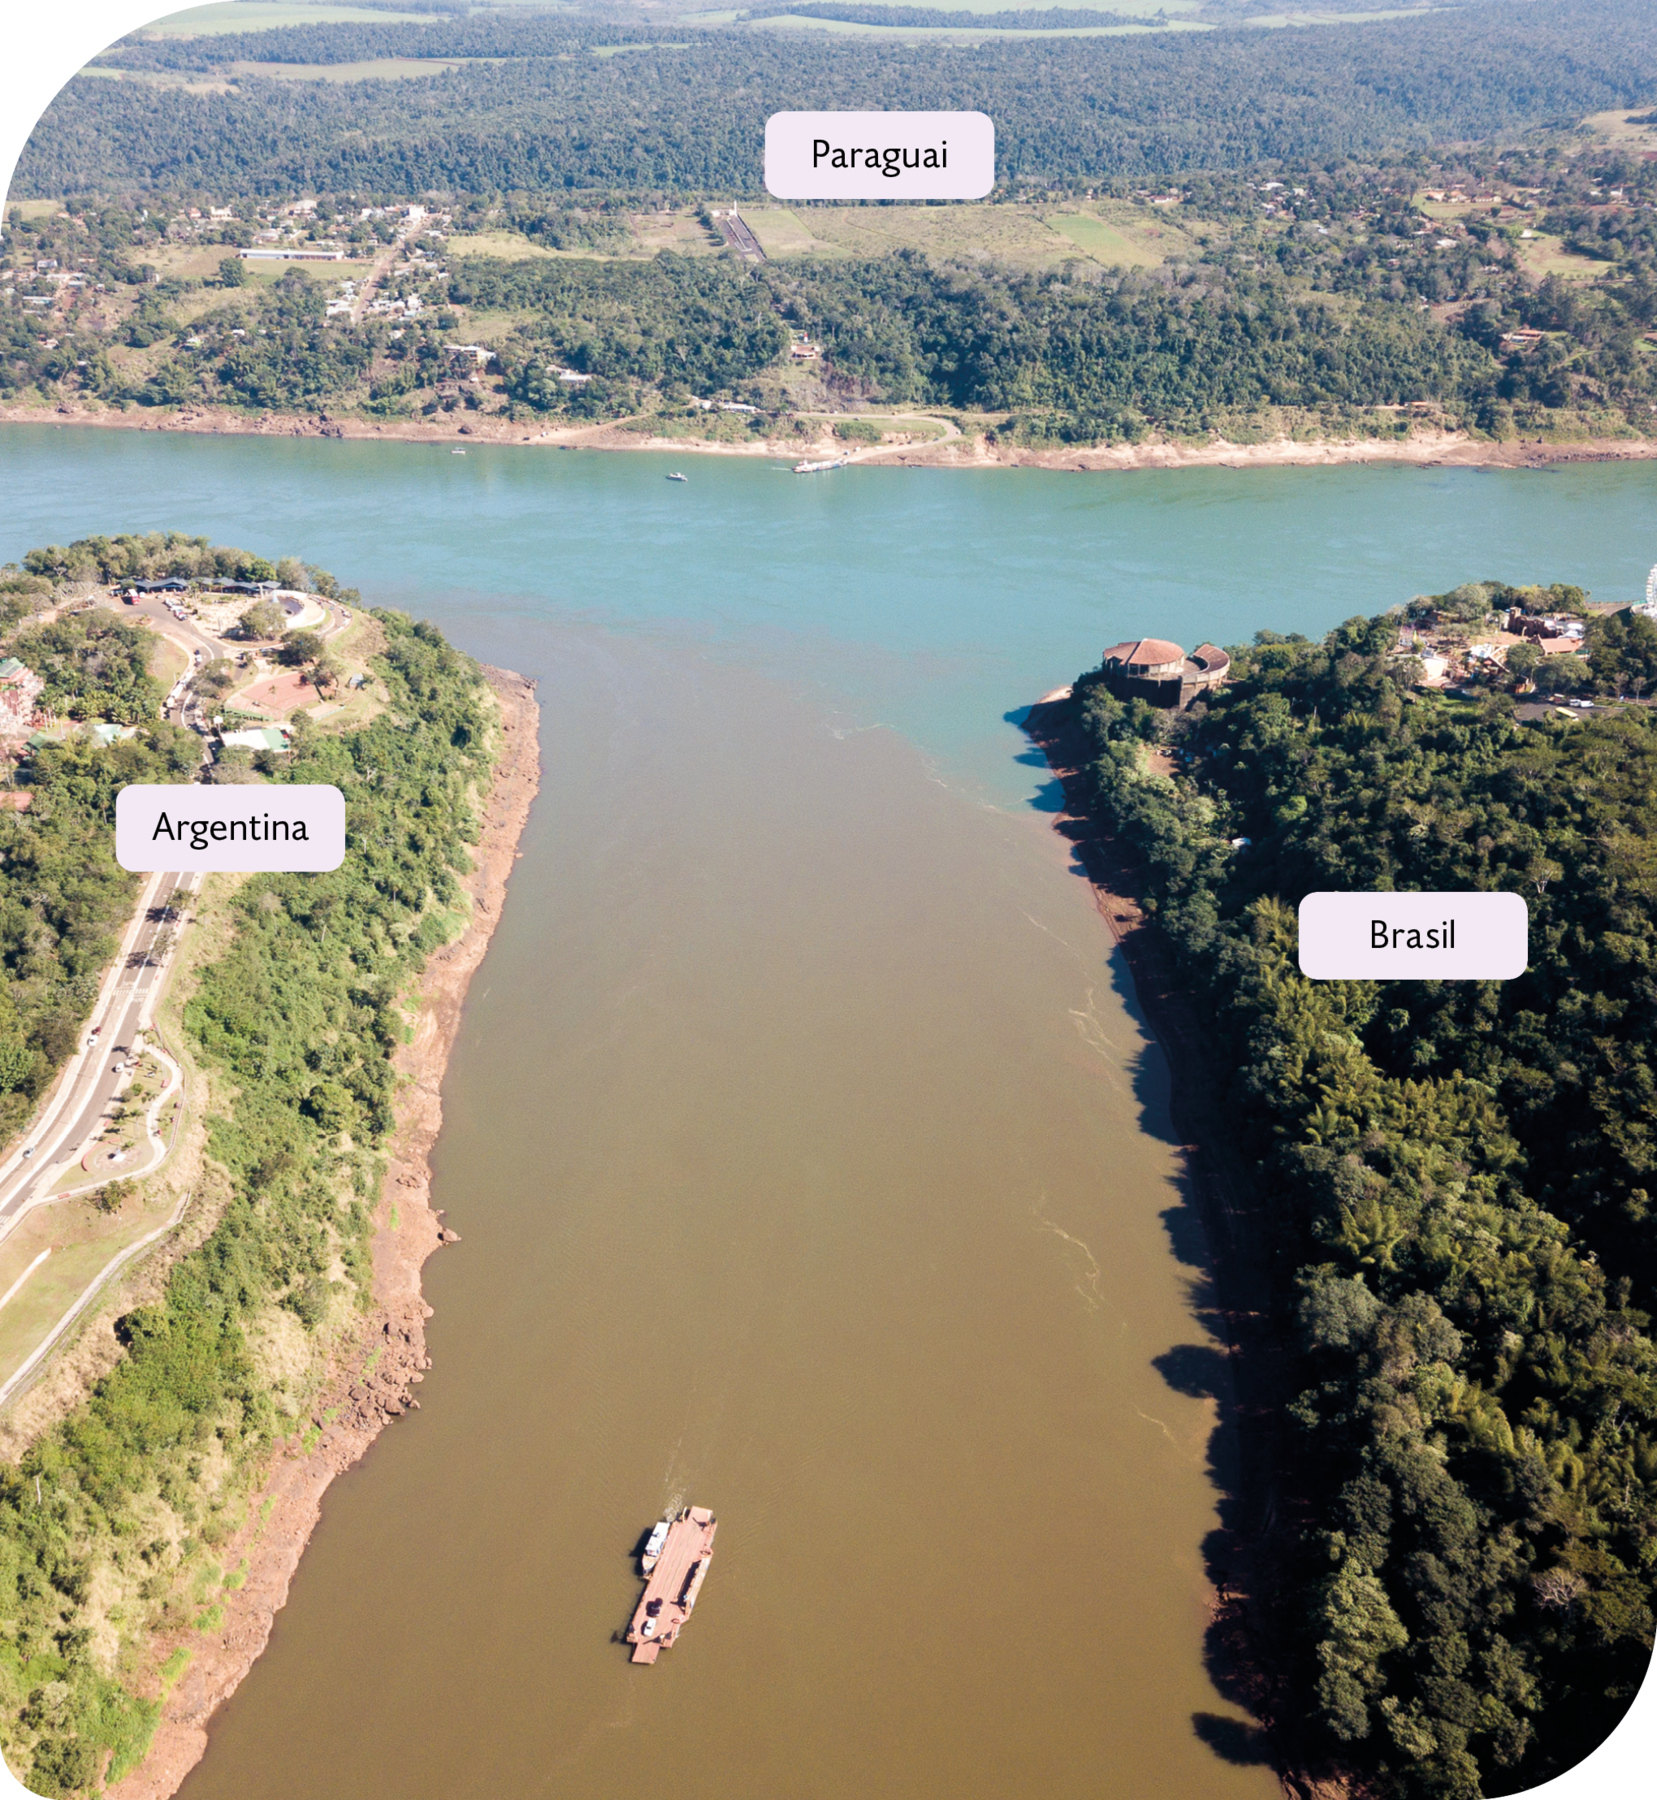 Fotografia. Vista de cima. Ao centro e ao norte, rios se encontrando. À esquerda, Argentina, com uma estrada entre árvores. À direita, Brasil com floresta e algumas casas; Ao fundo, Paraguai, com áreas cobertas por vegetação.